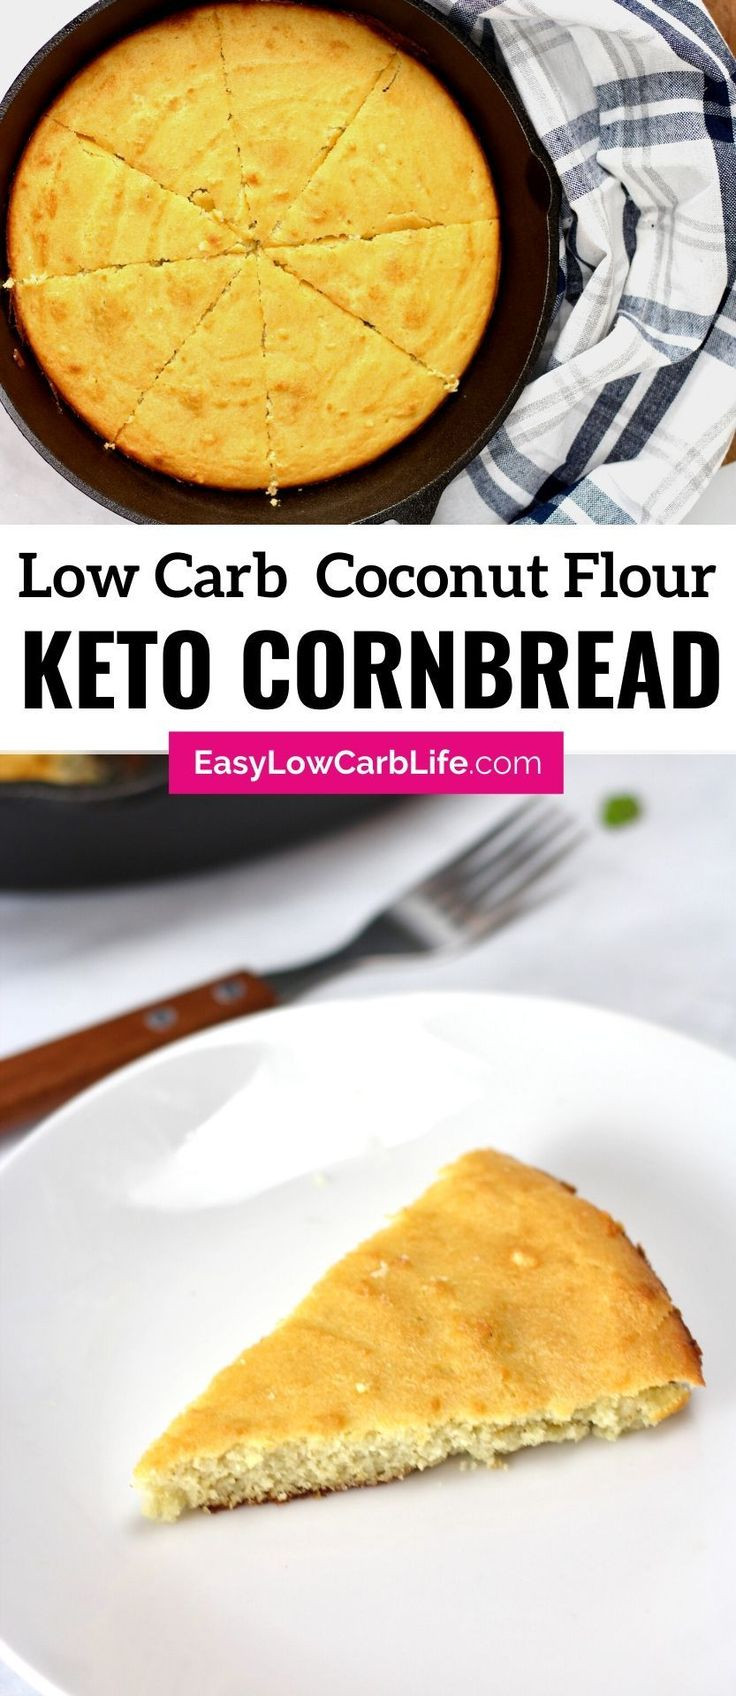 Keto Cornbread With Corn Extract
 Keto Low Carb Cornbread Recipe in 2020